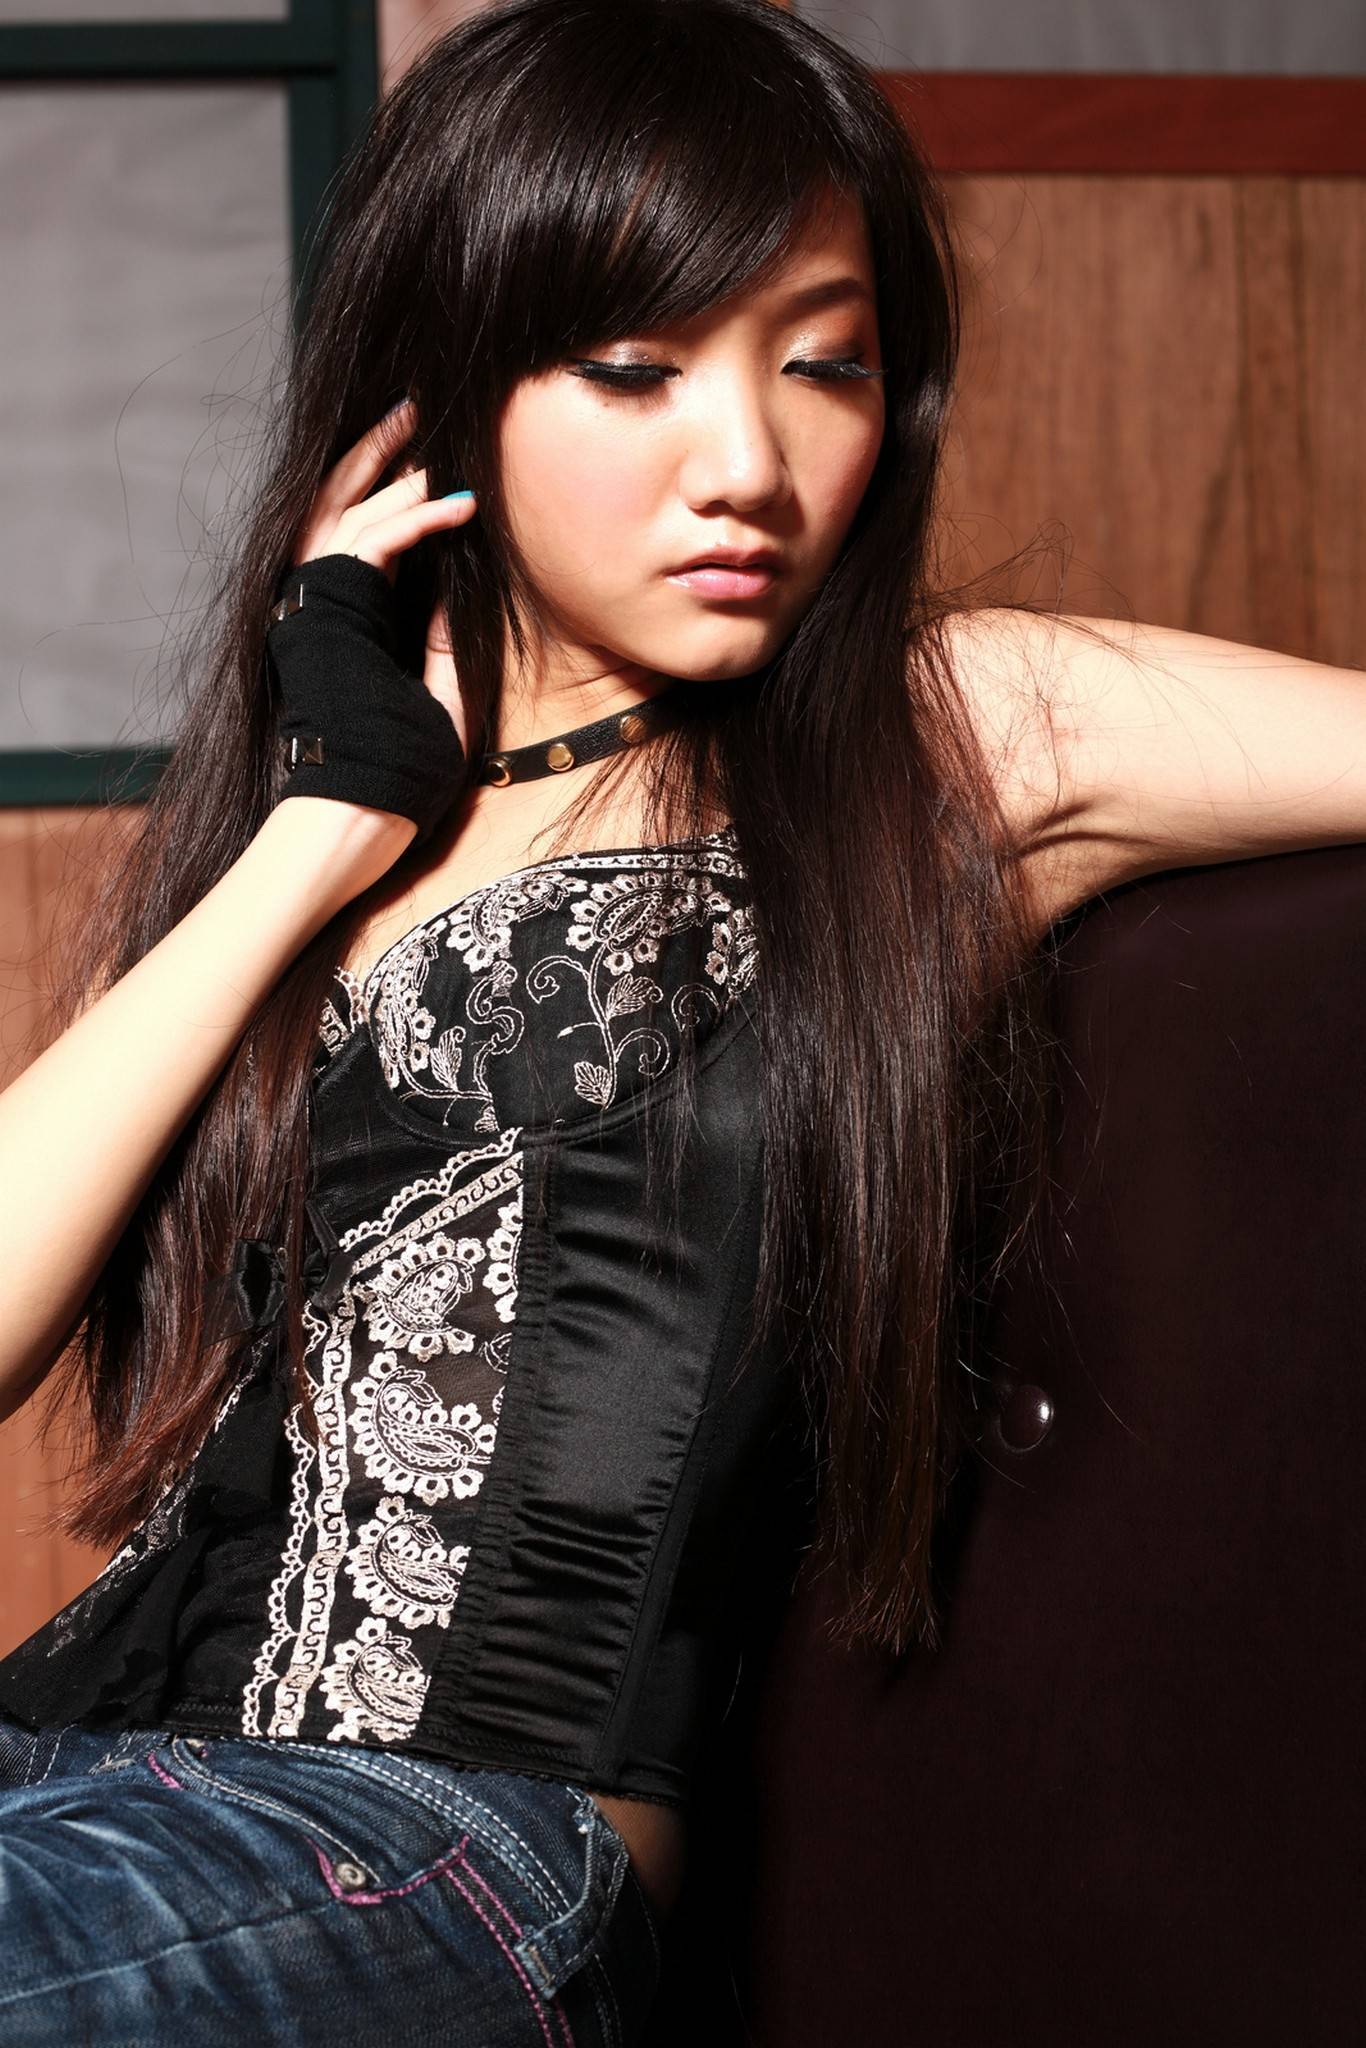 Tina 0120129 Yiqing domestic model high definition photo of beautiful women